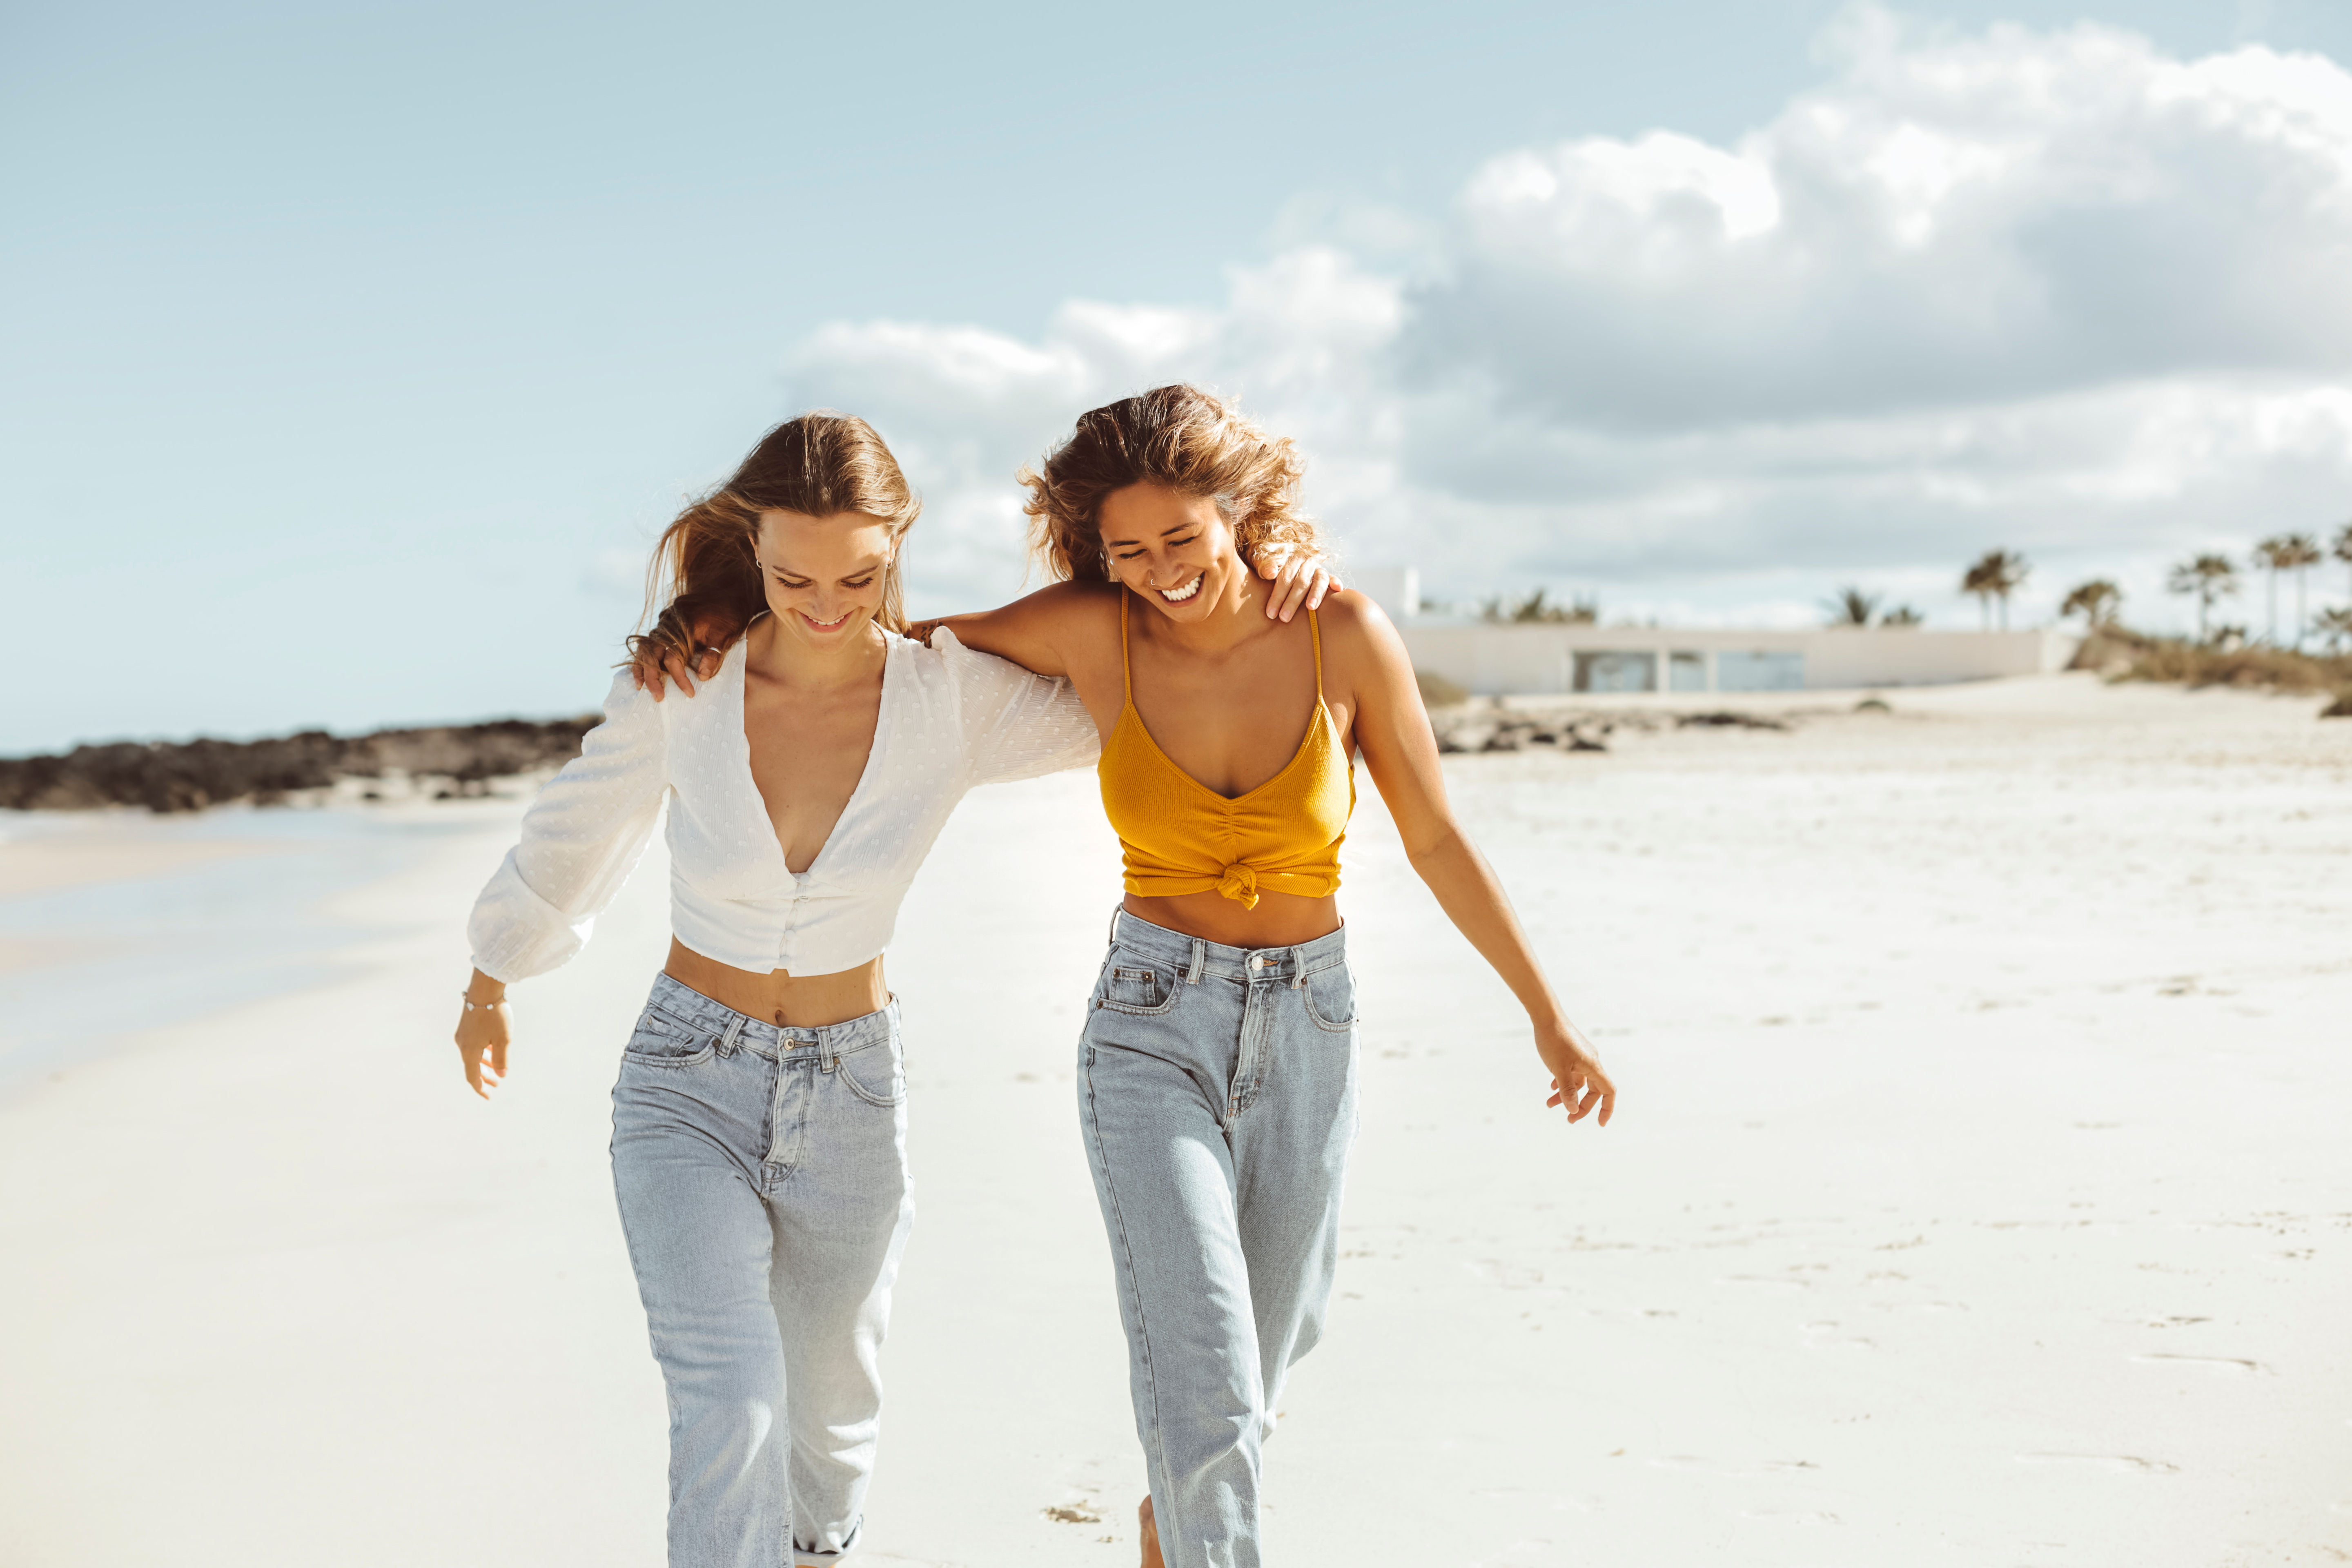 Deux meilleurs amis marchant le long d'une plage et riant | Source : Shutterstock